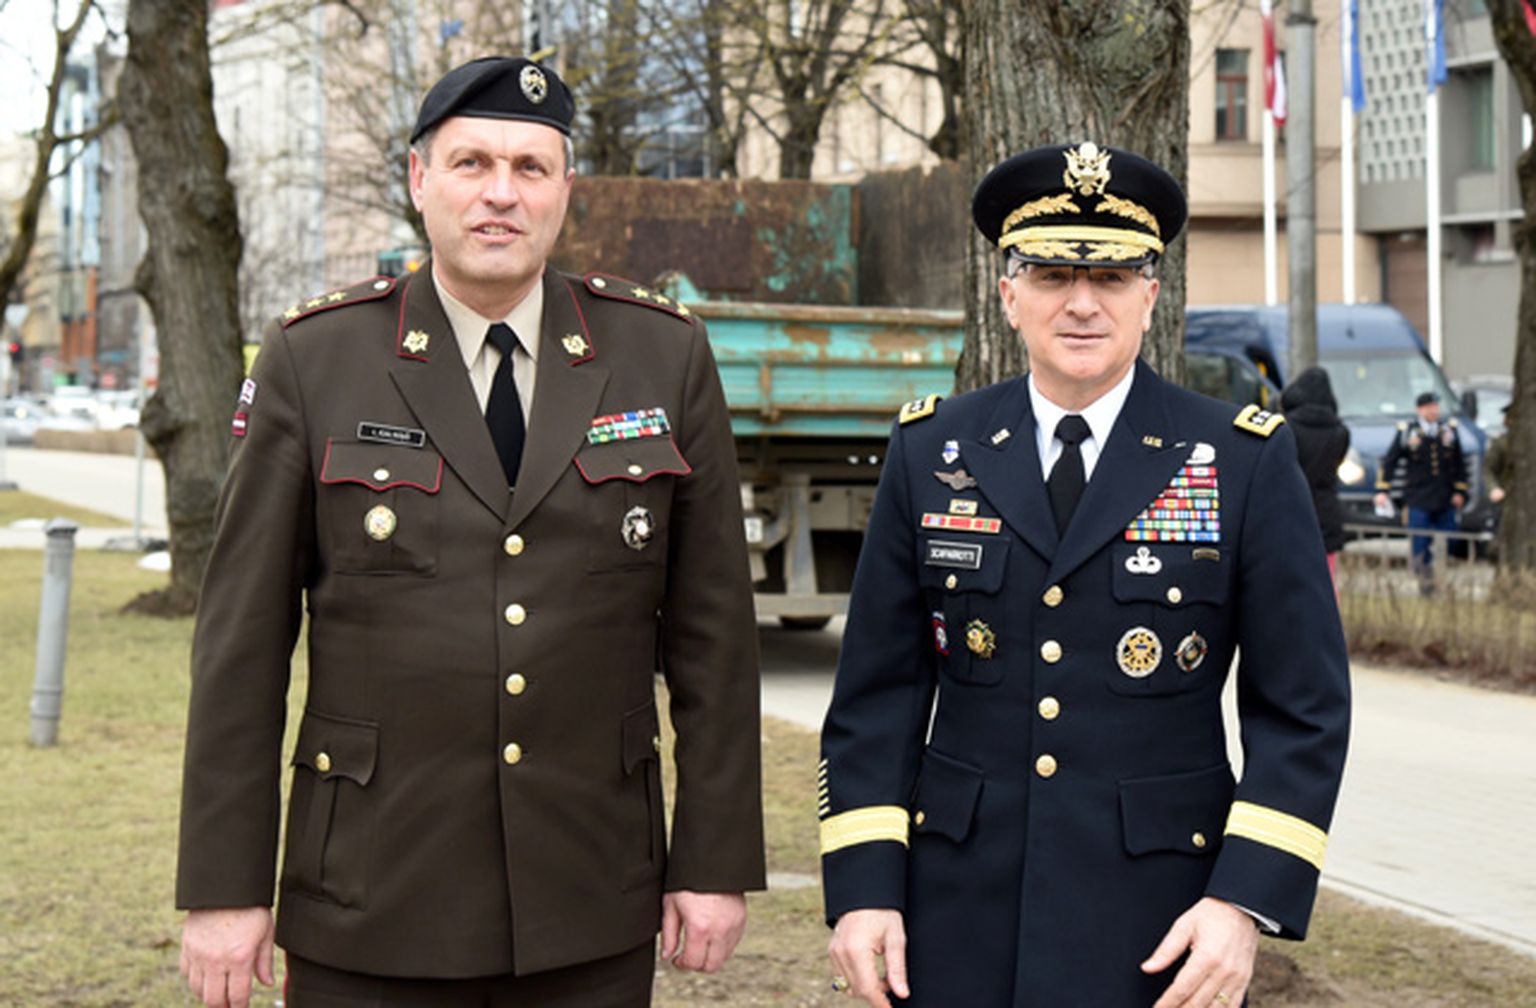 Nacionālo bruņoto spēku komandieris ģenerālmajors Leonīds Kalniņš (no kreisās) un ASV Eiropas spēku virspavēlnieks, NATO spēku virspavēlnieks Eiropā ģenerālis Kērtiss M. Skaparoti